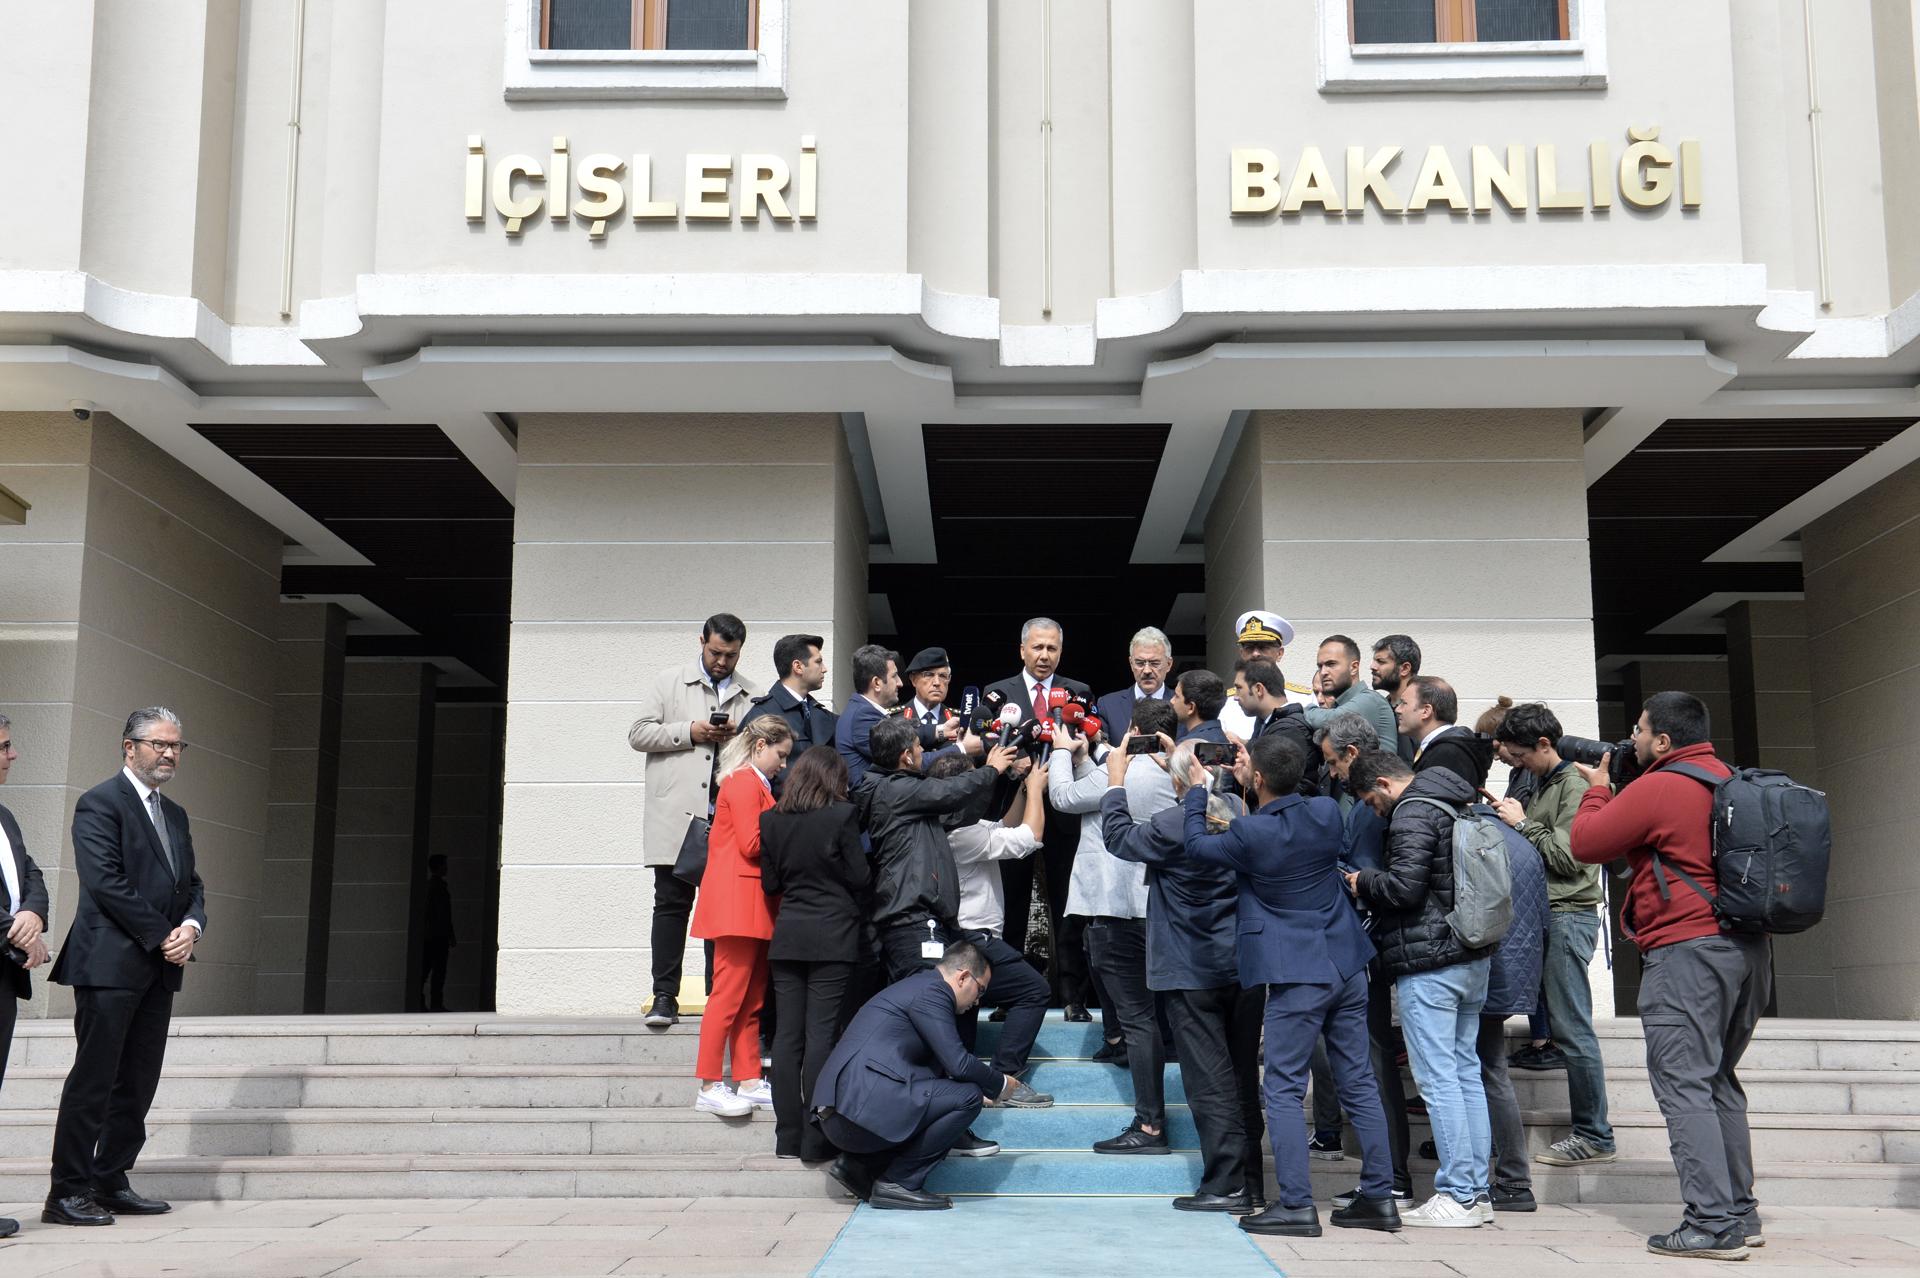 El ministro del Interior turco, Ali Yerlikaya, habla a la prensa tras el atentado de este domingo frente a la entrada al Ministerio que dirige.
EFE/EPA/NECATI SAVAS